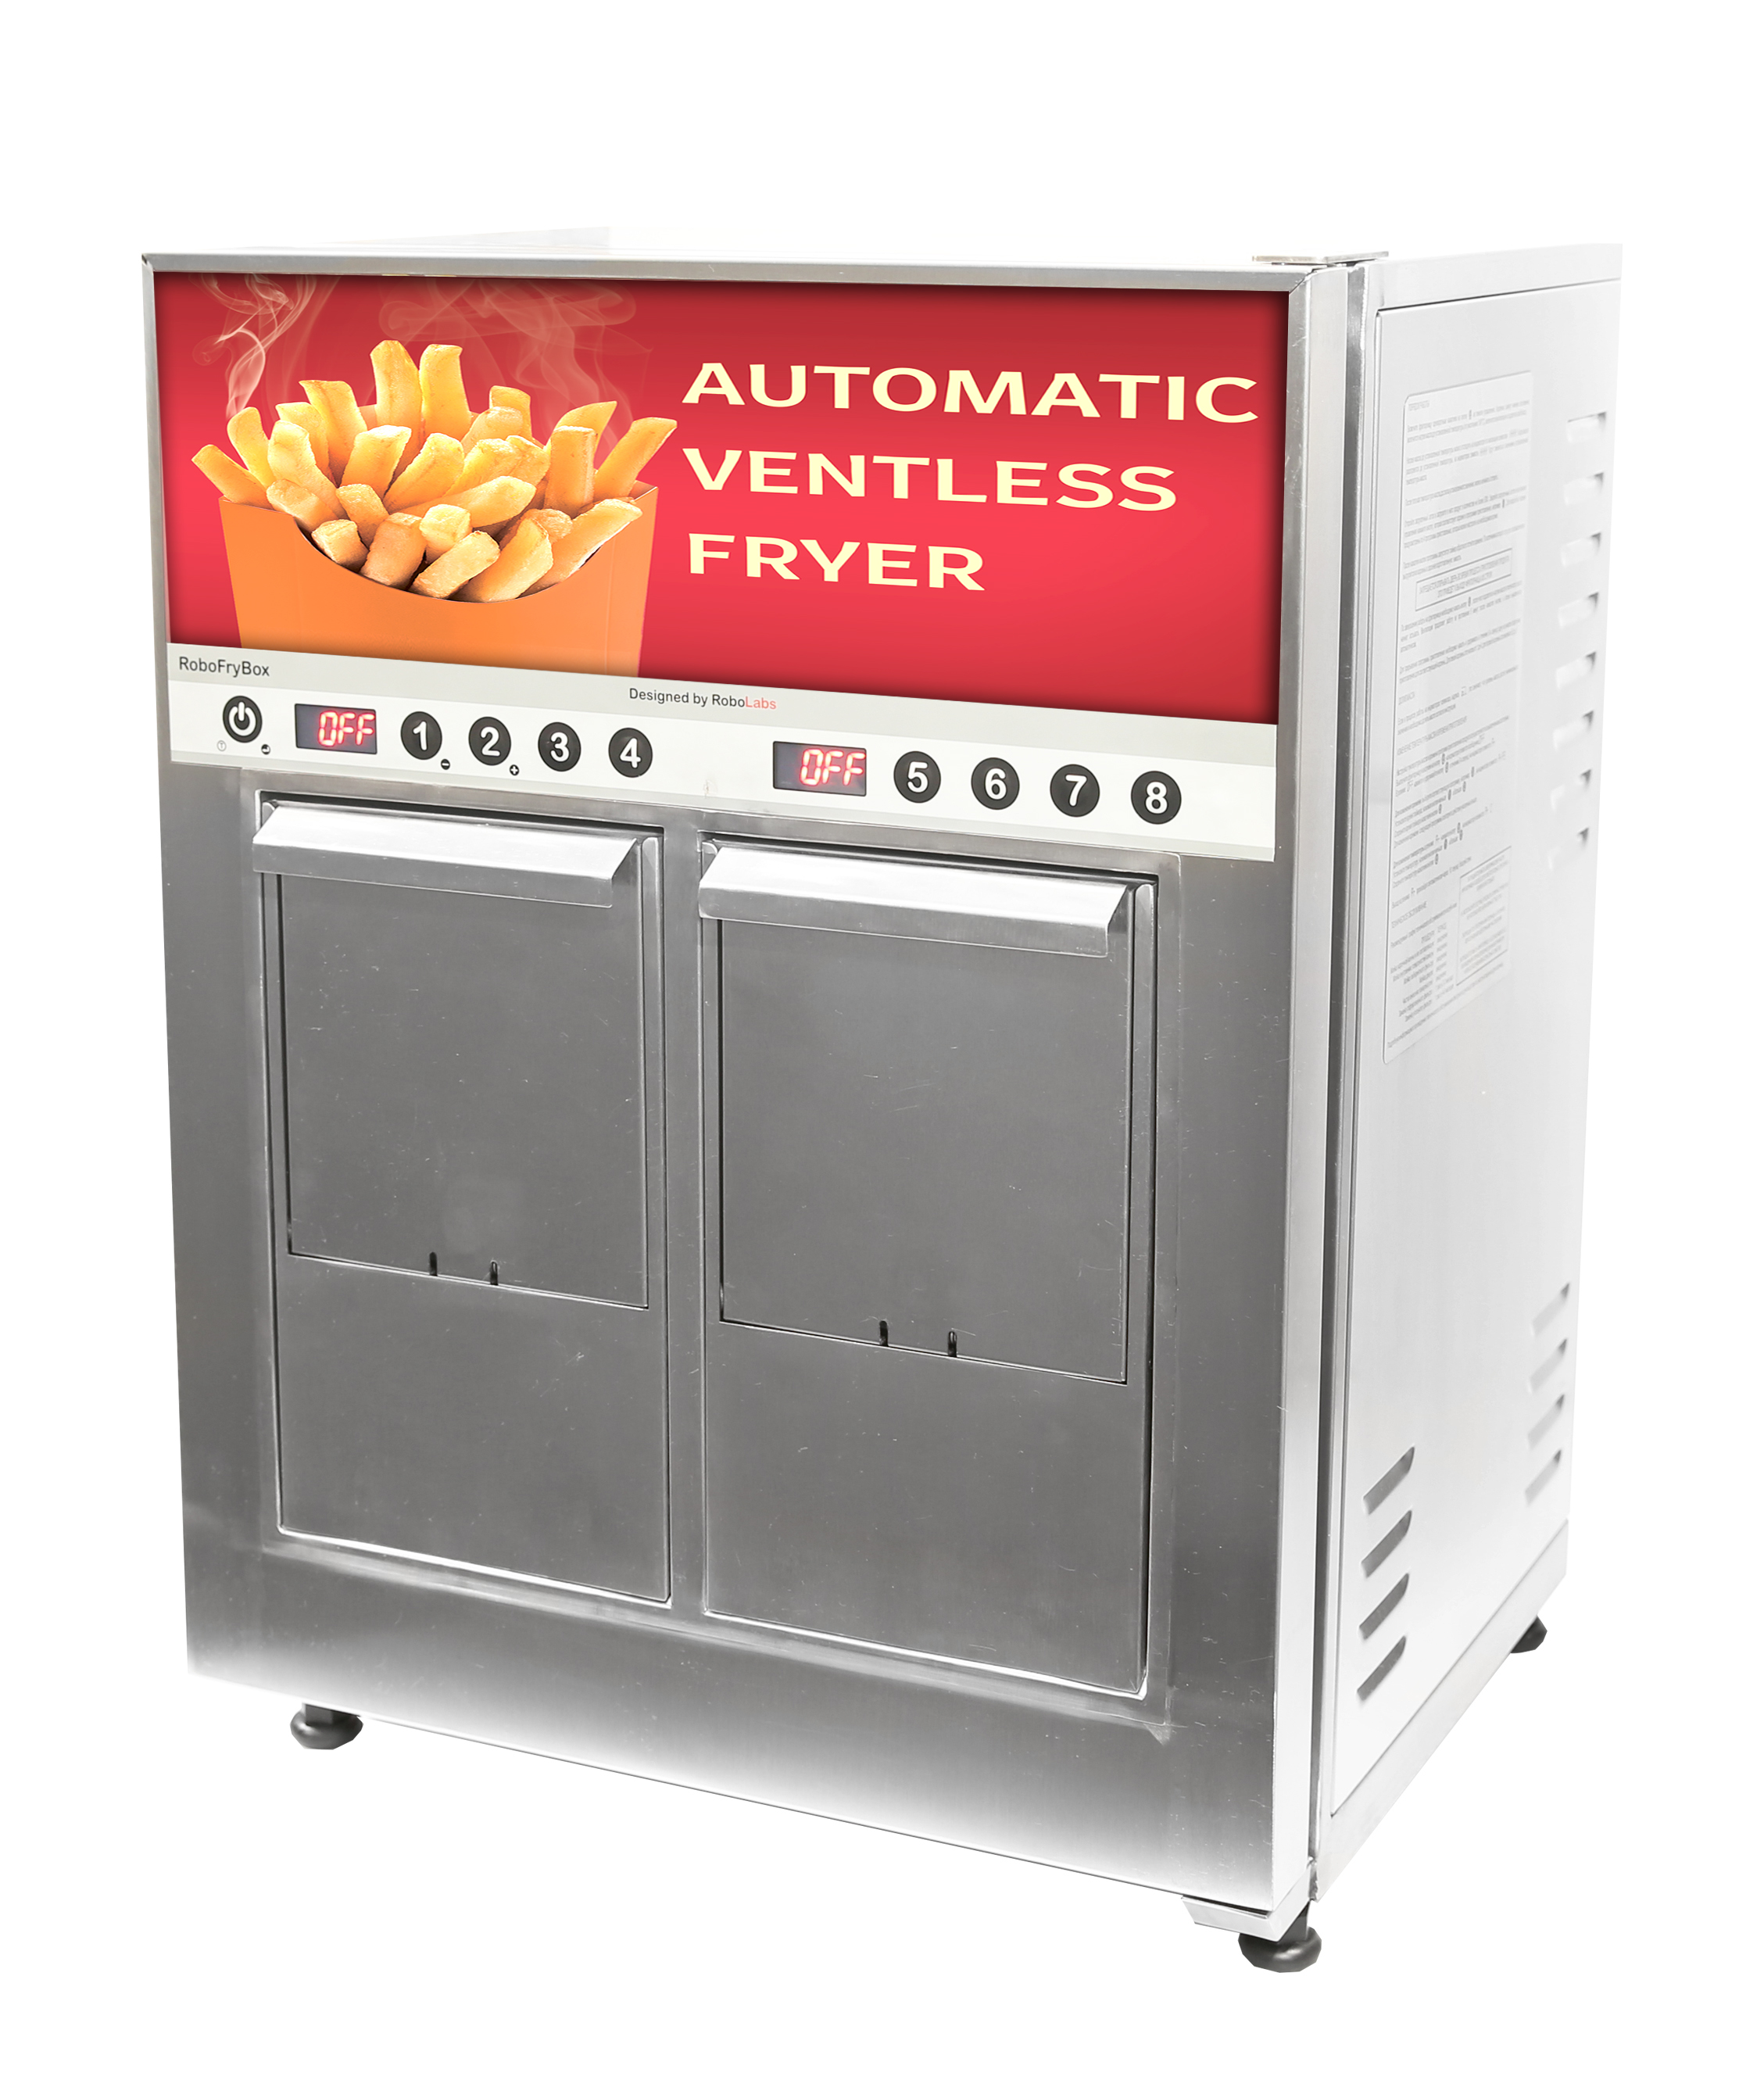 Freidora automática de sobremesa RoboFryBox